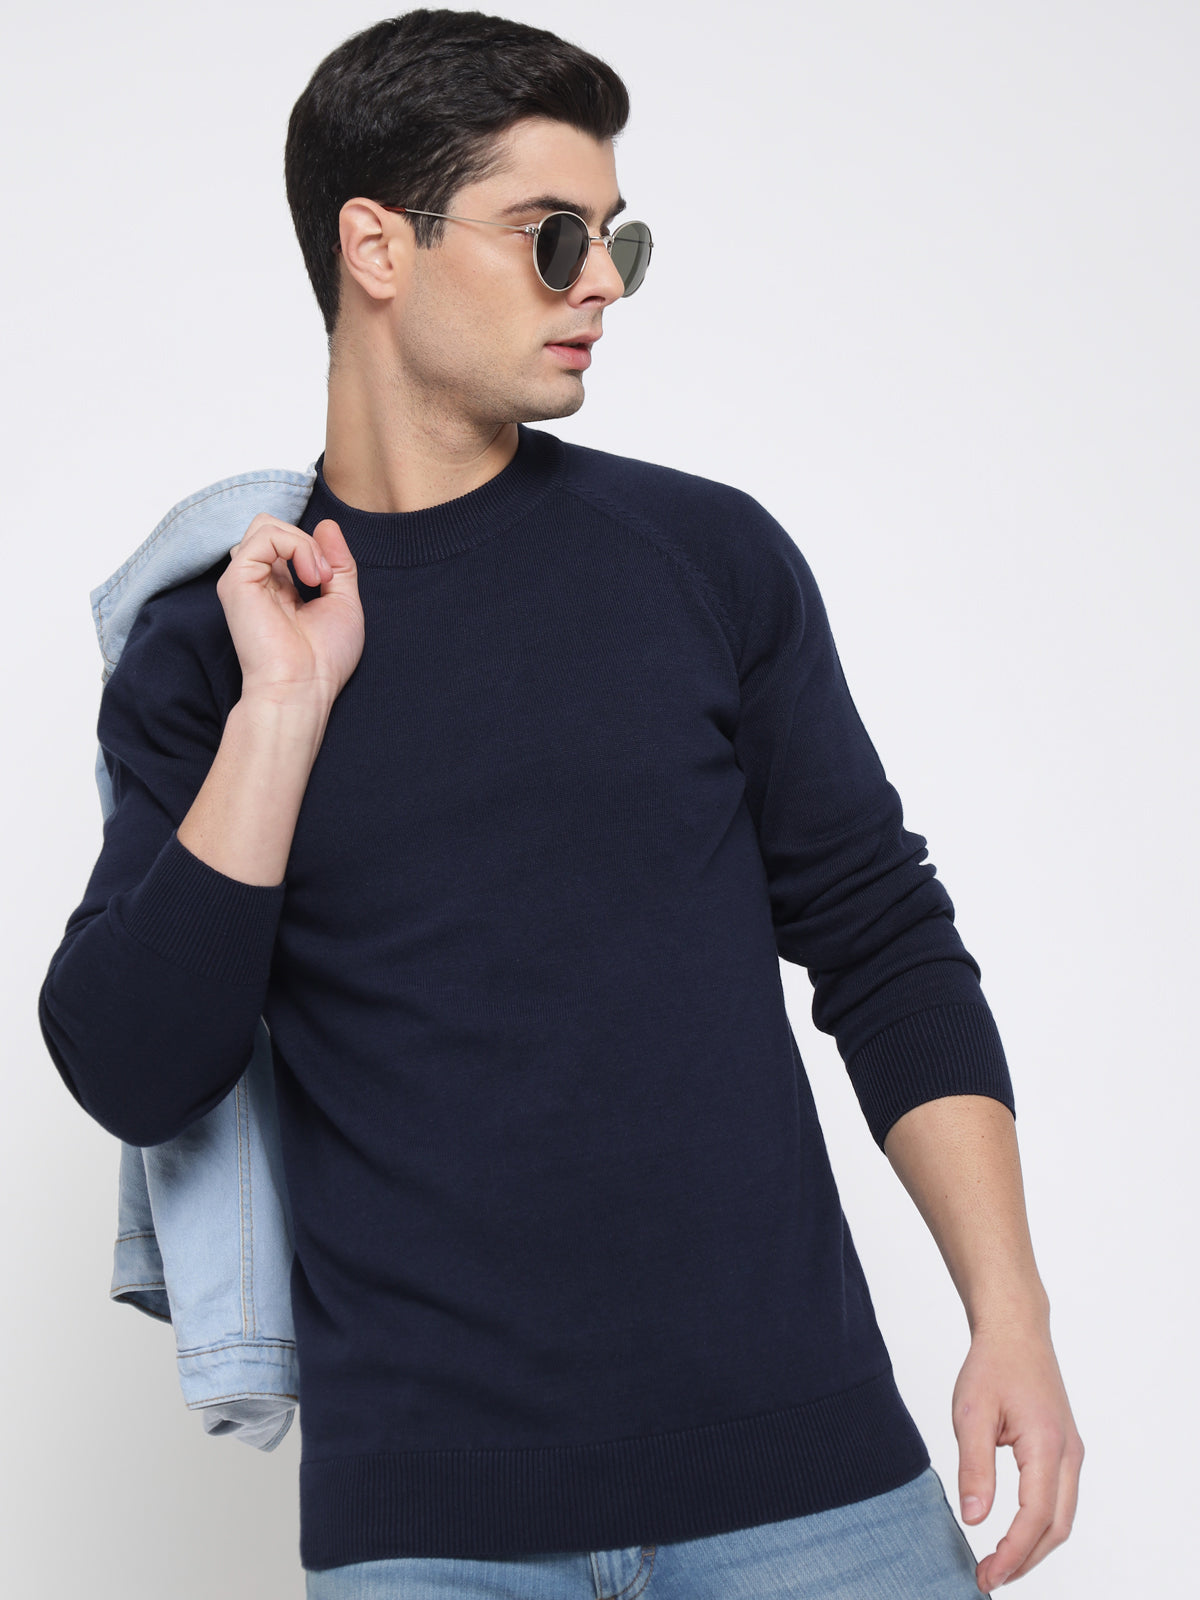 Navy Blue Basic Soft Sweater For Men 4